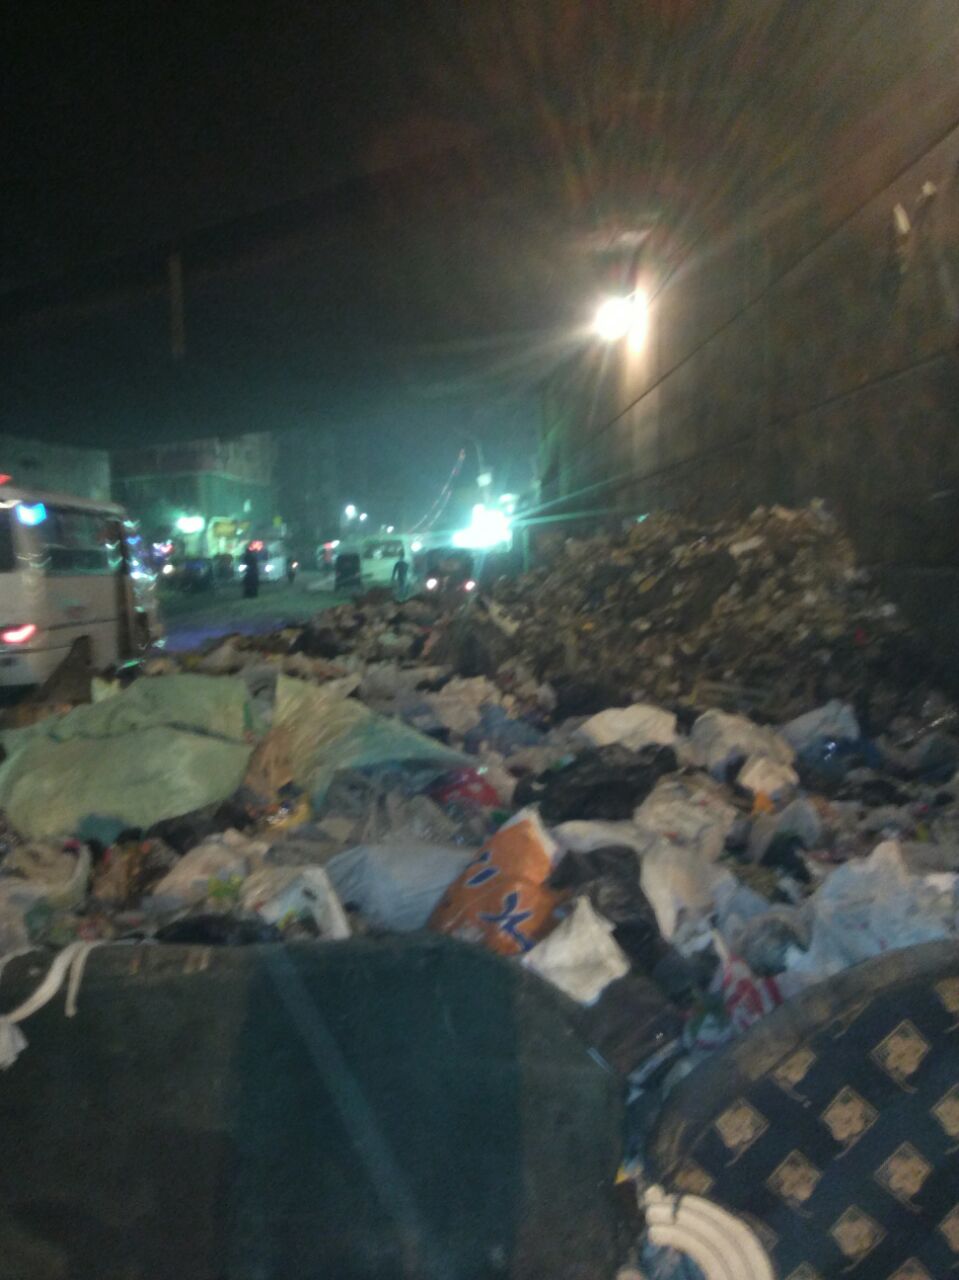  انتشار القمامة بشارع ناهيا 